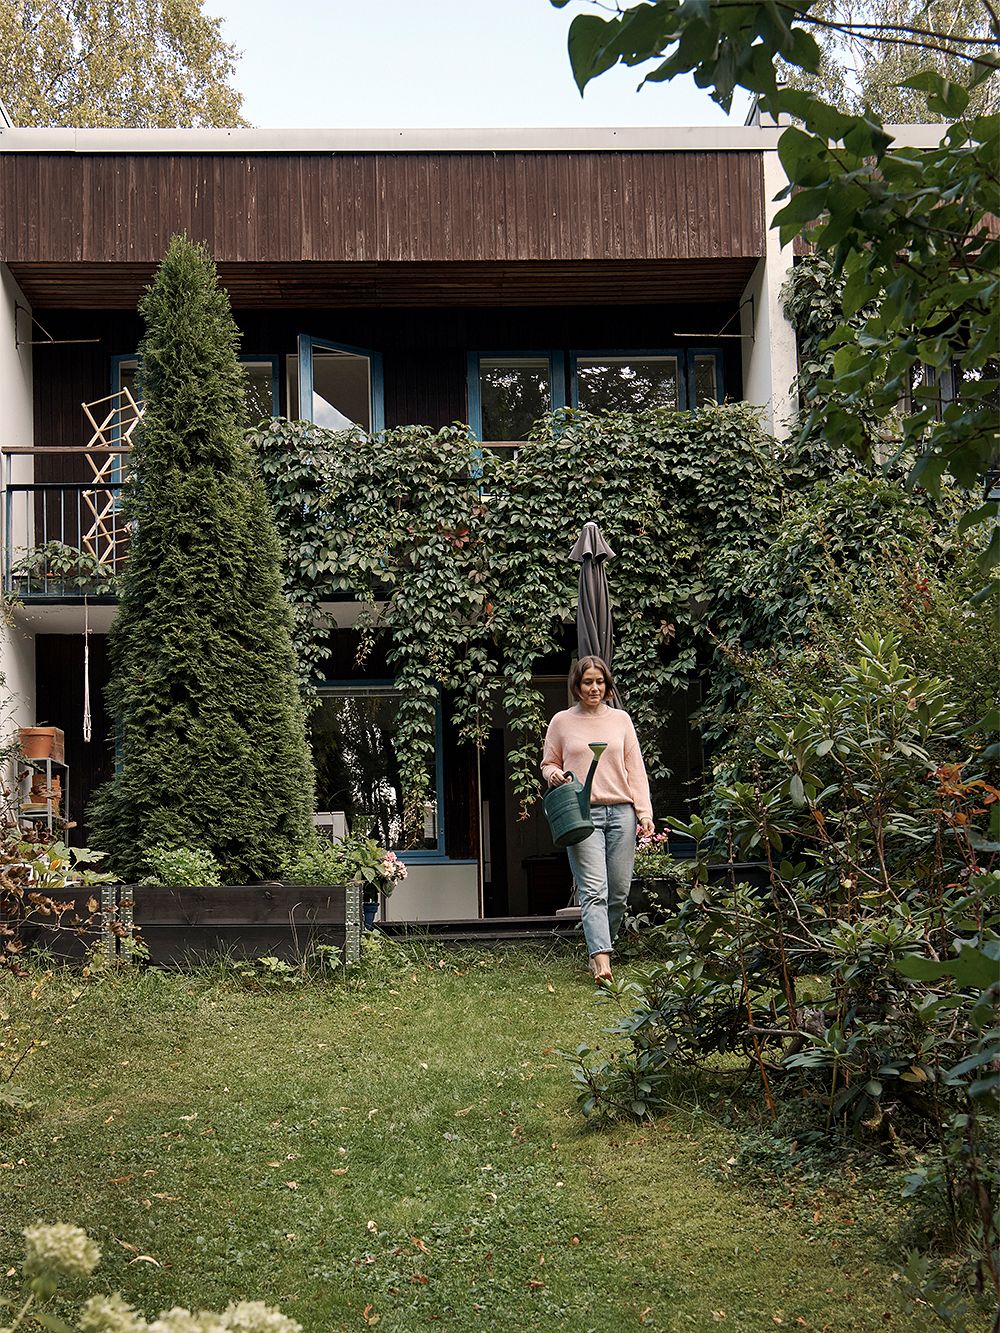 An image of Asli Ufacik's home: the garden.